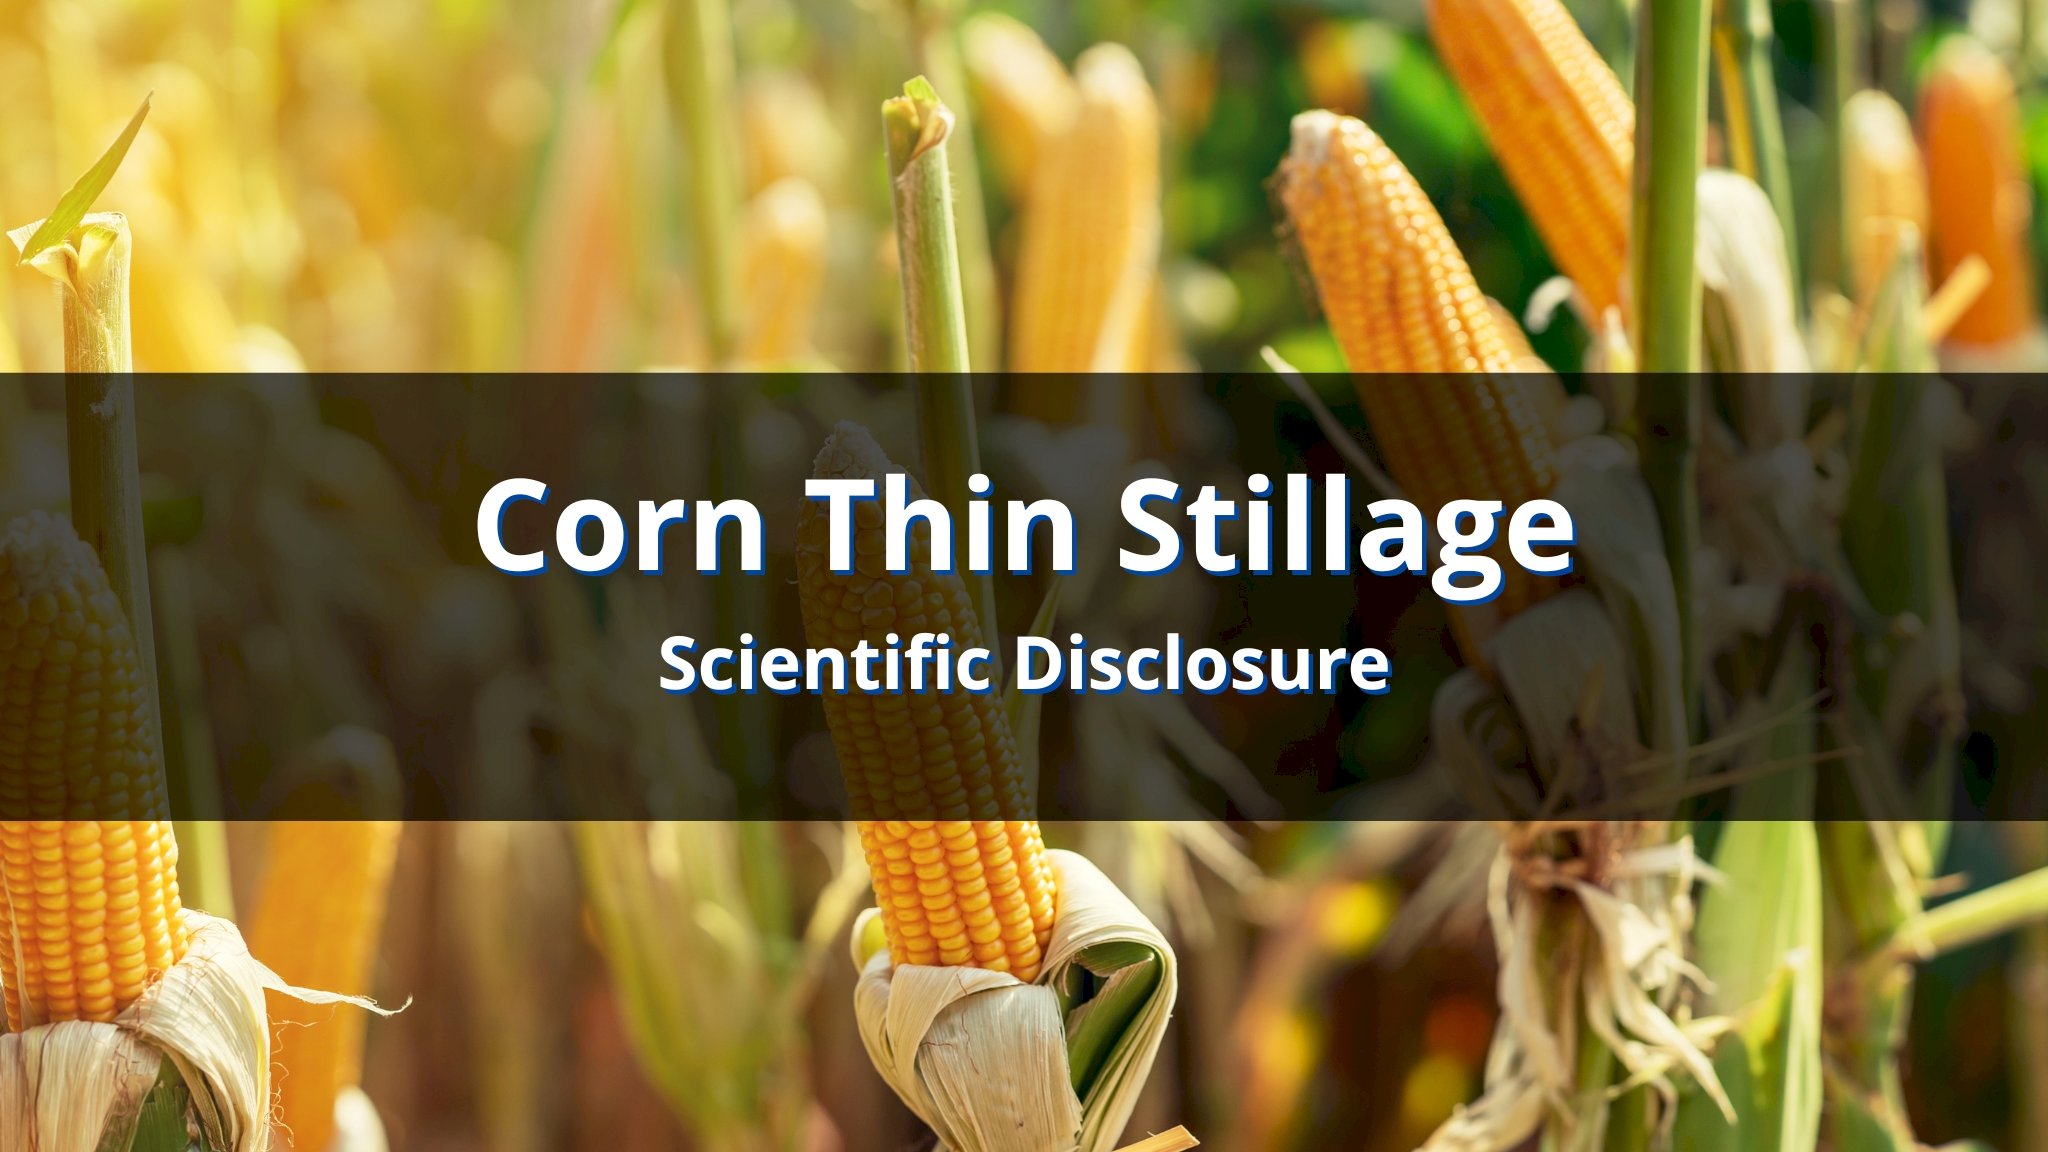 Biogas from Corn Thin Stillage